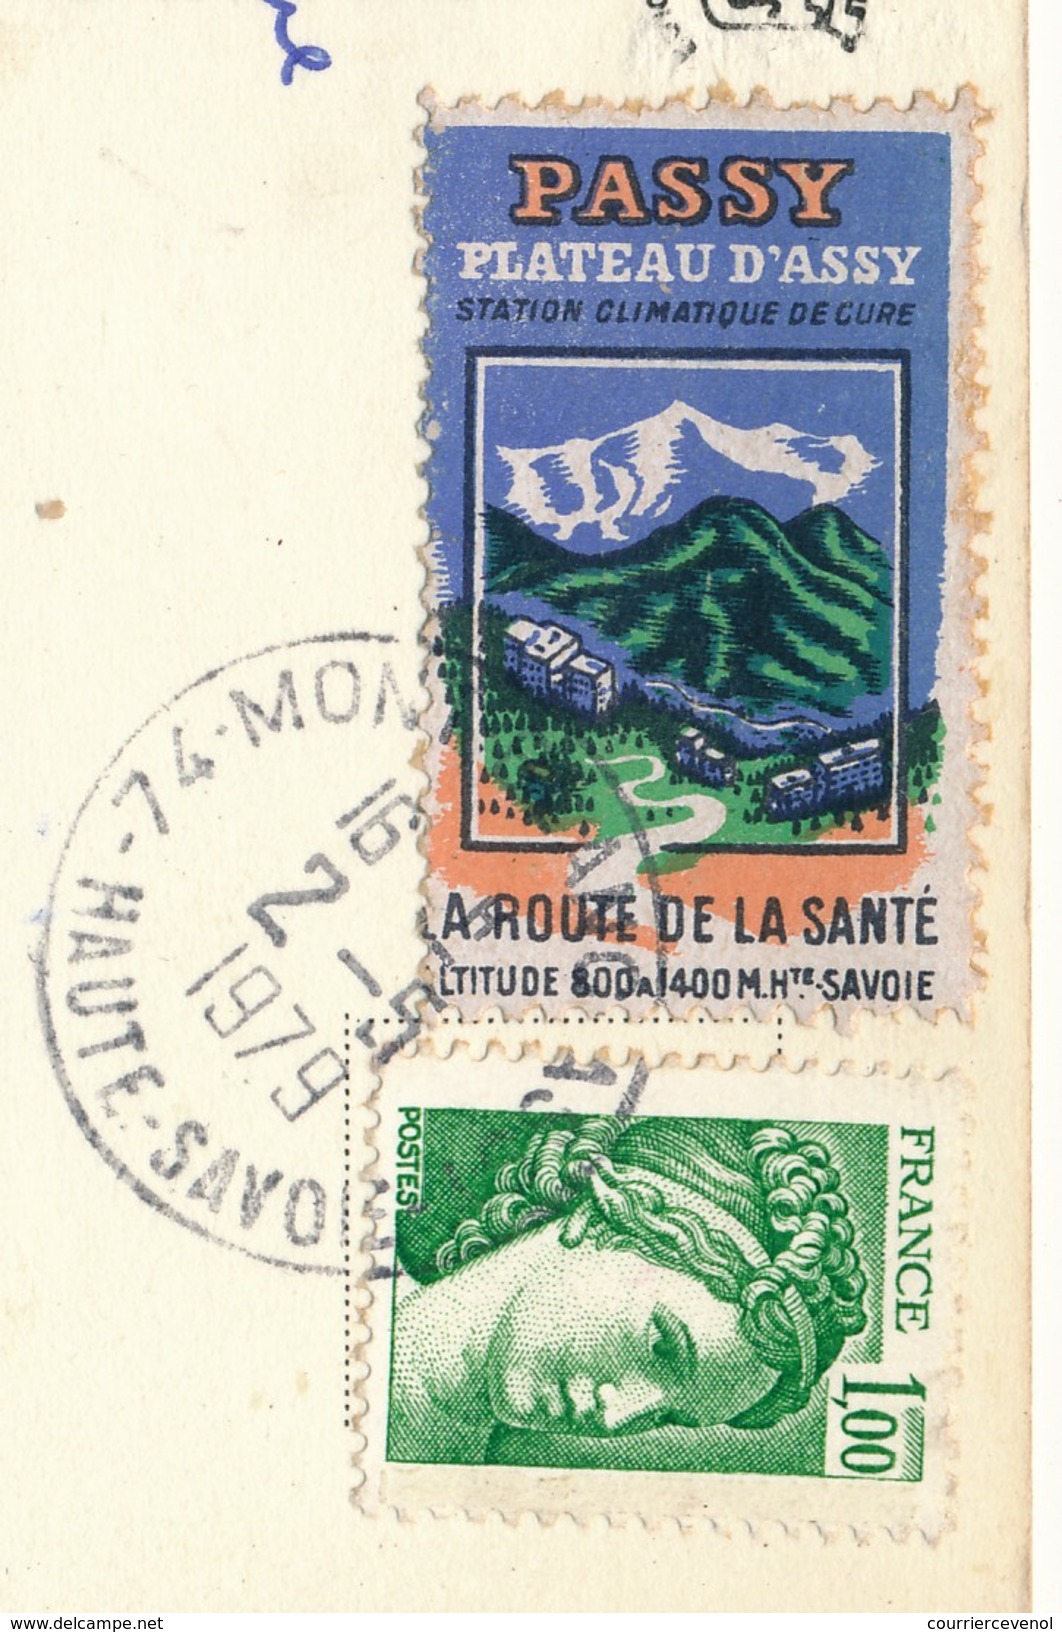 FRANCE => Vignette "Passy, Plateau D'Assy - La Route De La Santé" Sur Carte Postale 1979 - Cartas & Documentos